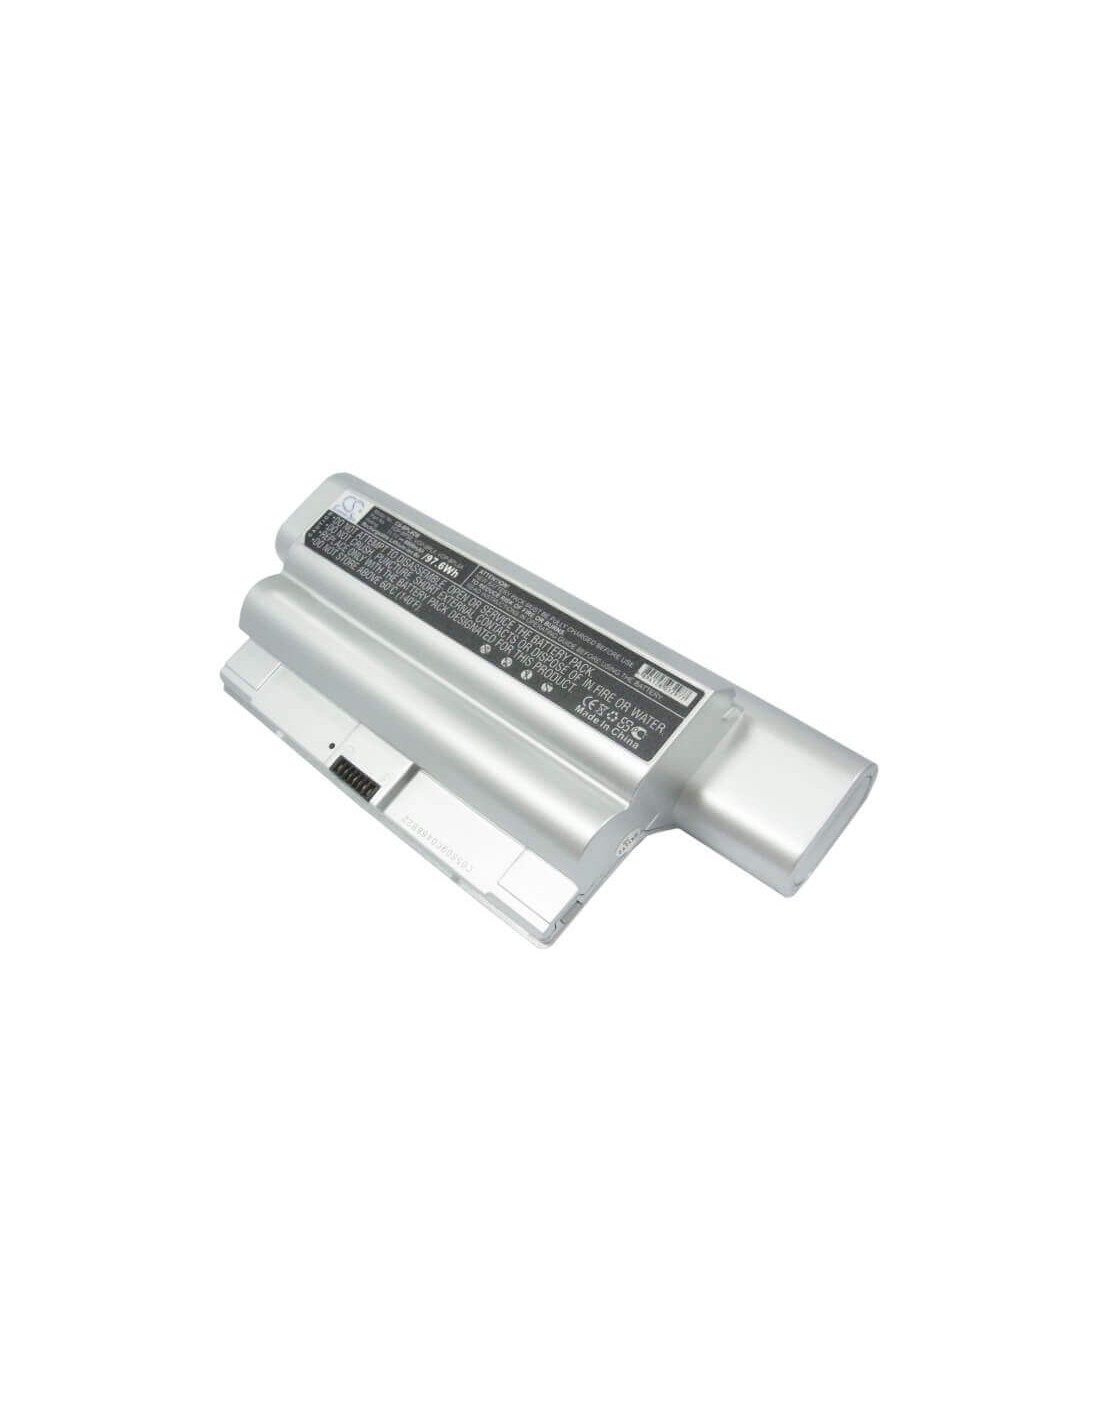 Silver Battery for Sony Vaio Vgn-fz15, Vaio Vgn-fz15g, Vaio Vgn-fz15l 11.1V, 8800mAh - 97.68Wh